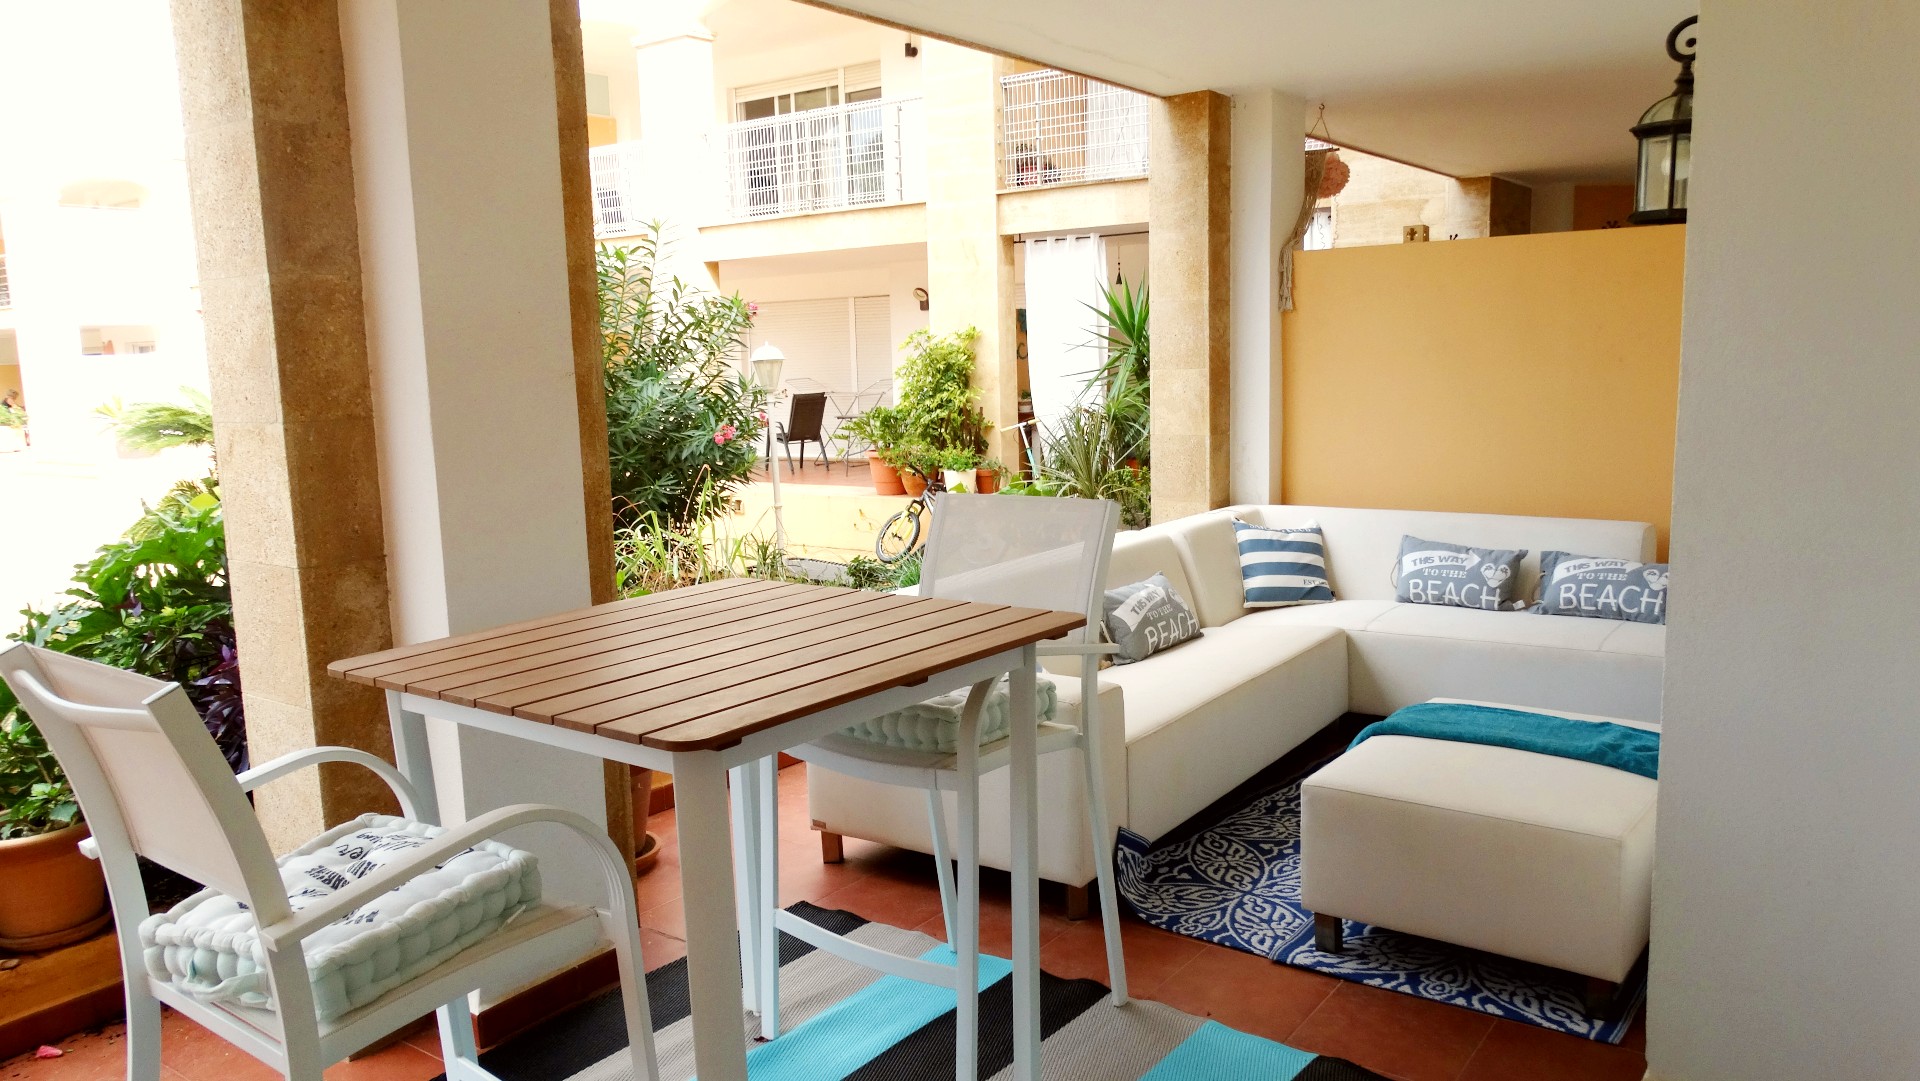 Apartamento de inversión de 3 dormitorios en planta baja a 5 minutos a pie de la playa del Arenal